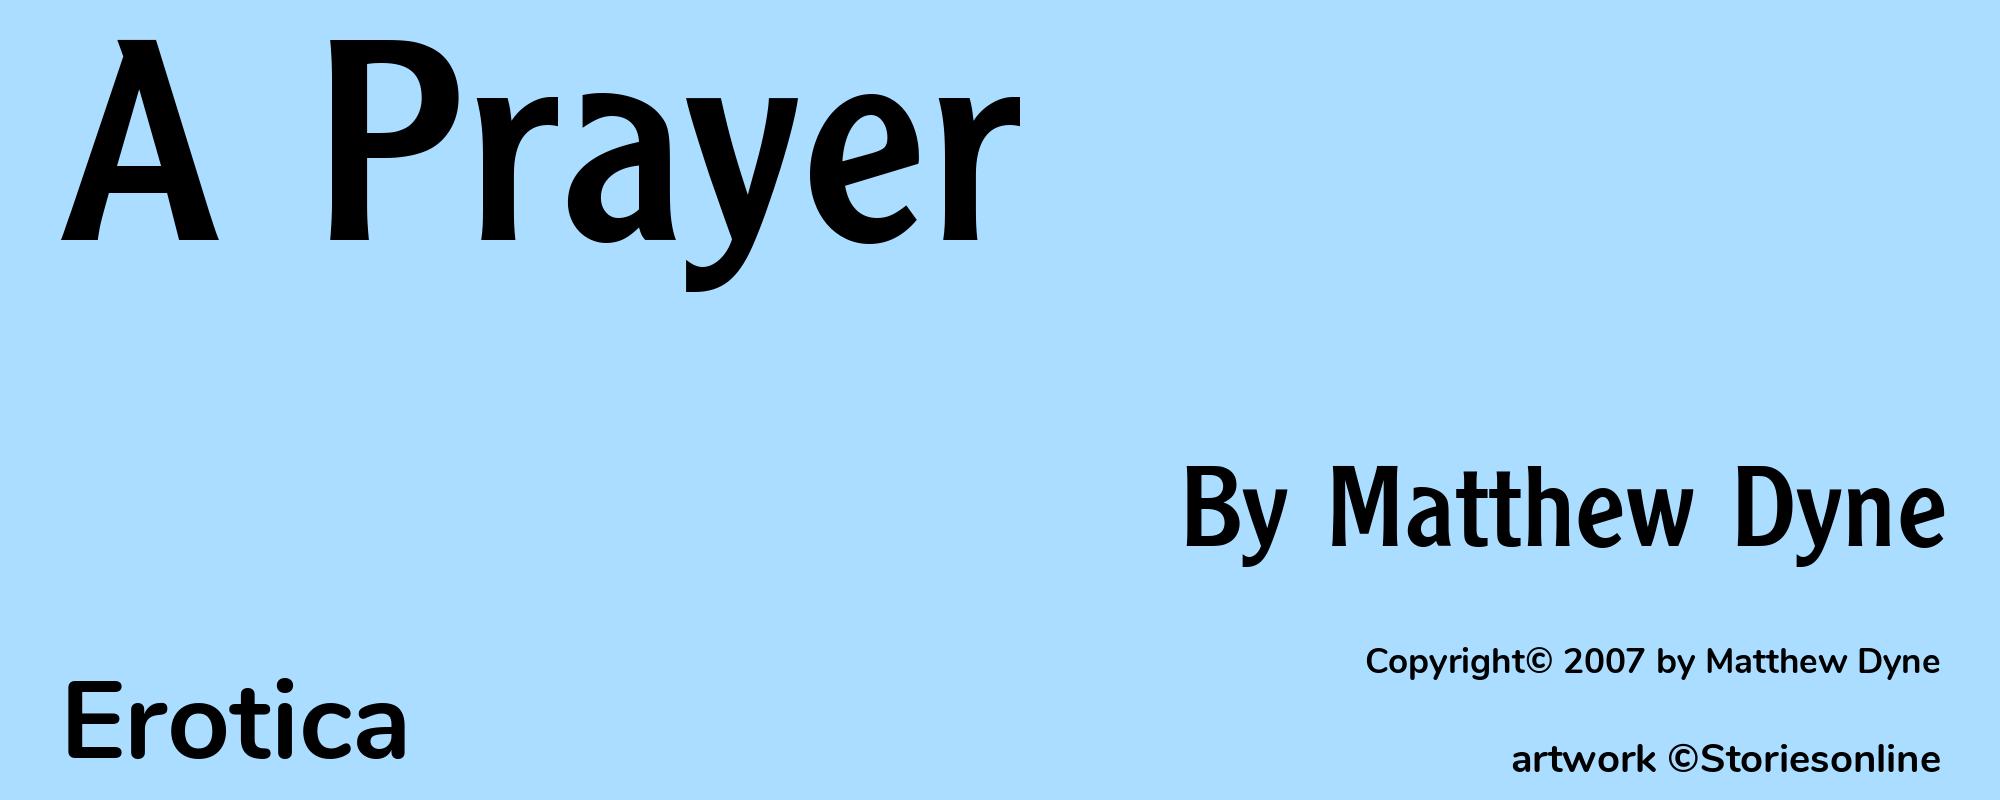 A Prayer - Cover